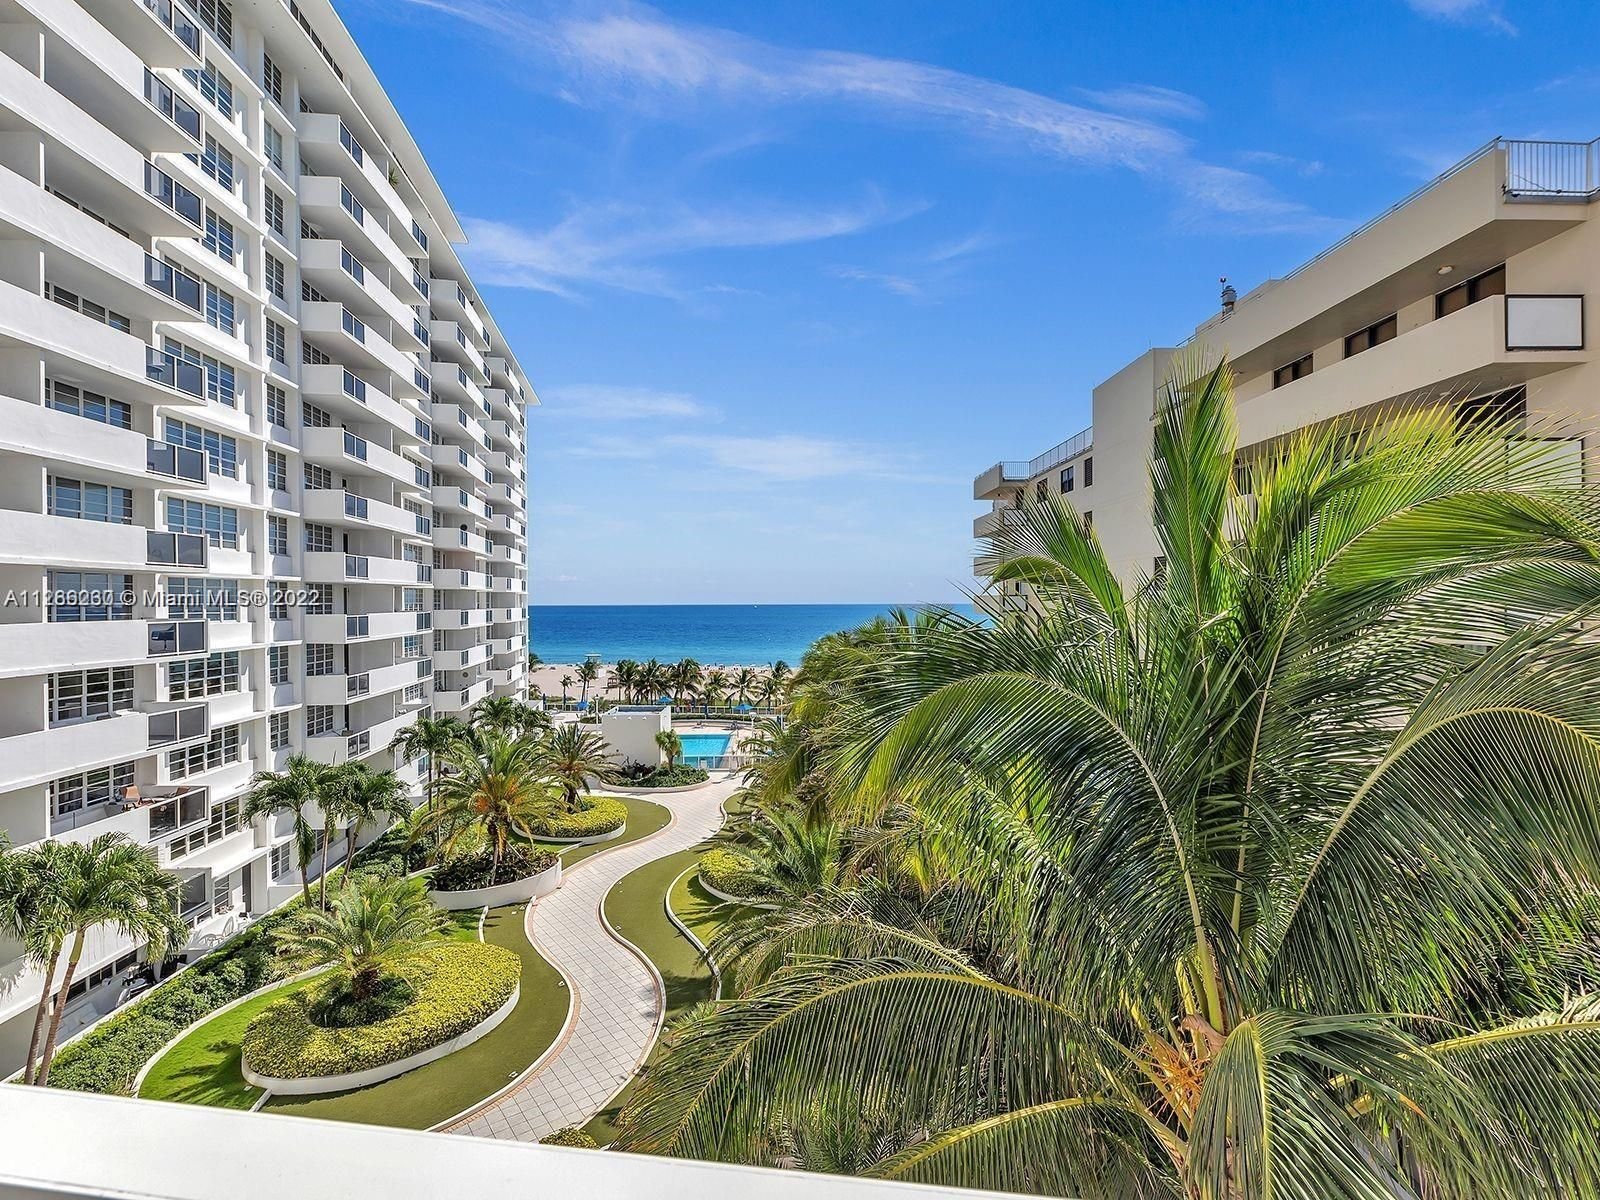 Real estate property located at 100 Lincoln Rd #515, Miami-Dade County, THE DECOPLAGE CONDO, Miami Beach, FL